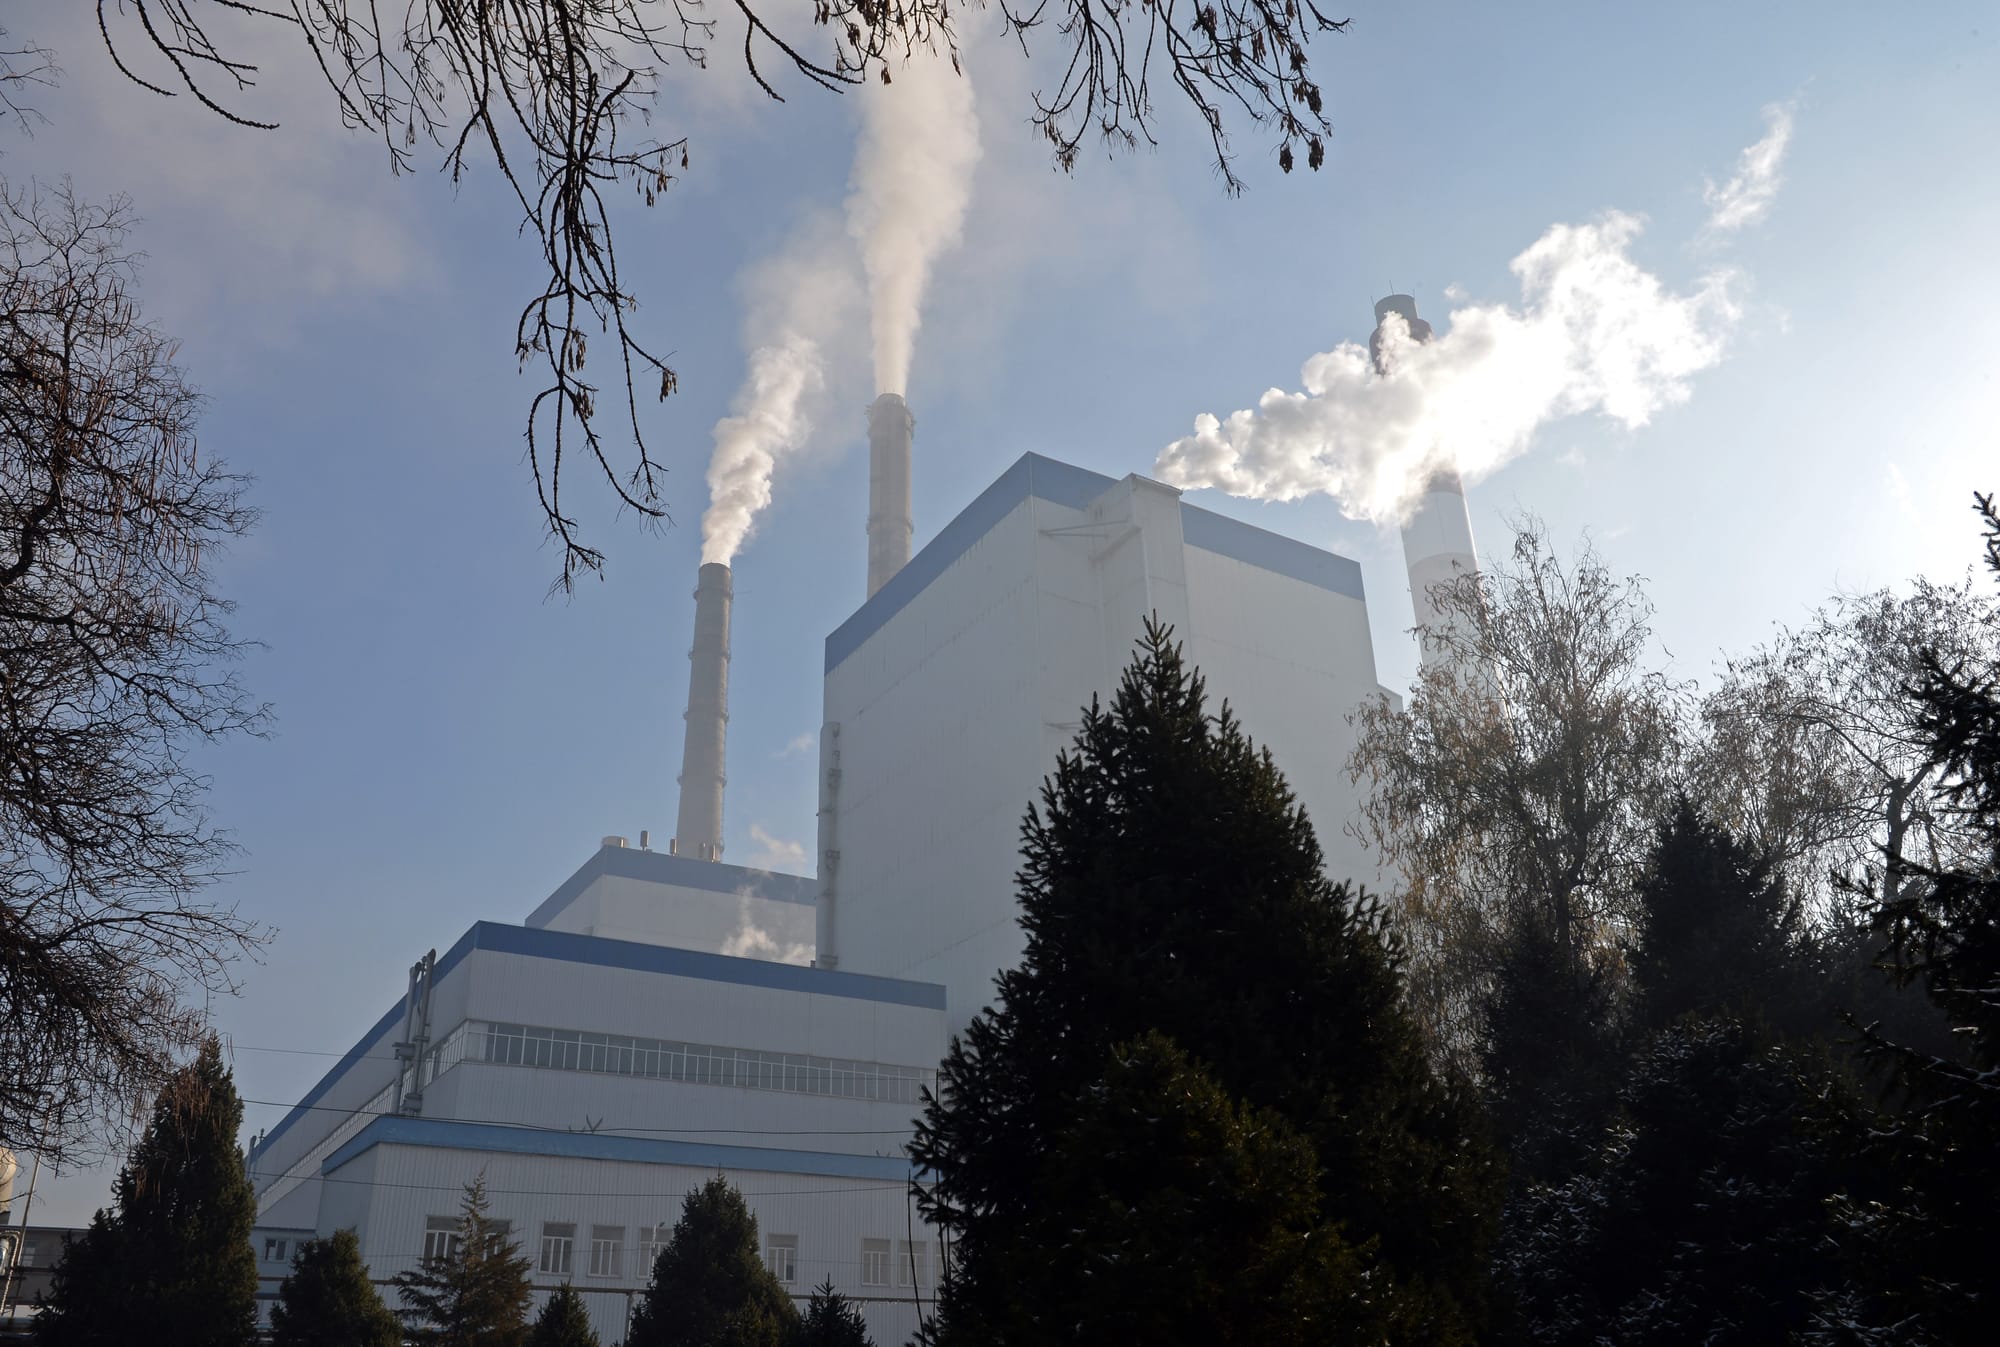 Каков запас угля и сколько топлива поступает на ТЭЦ Бишкека ежедневно? Подробности